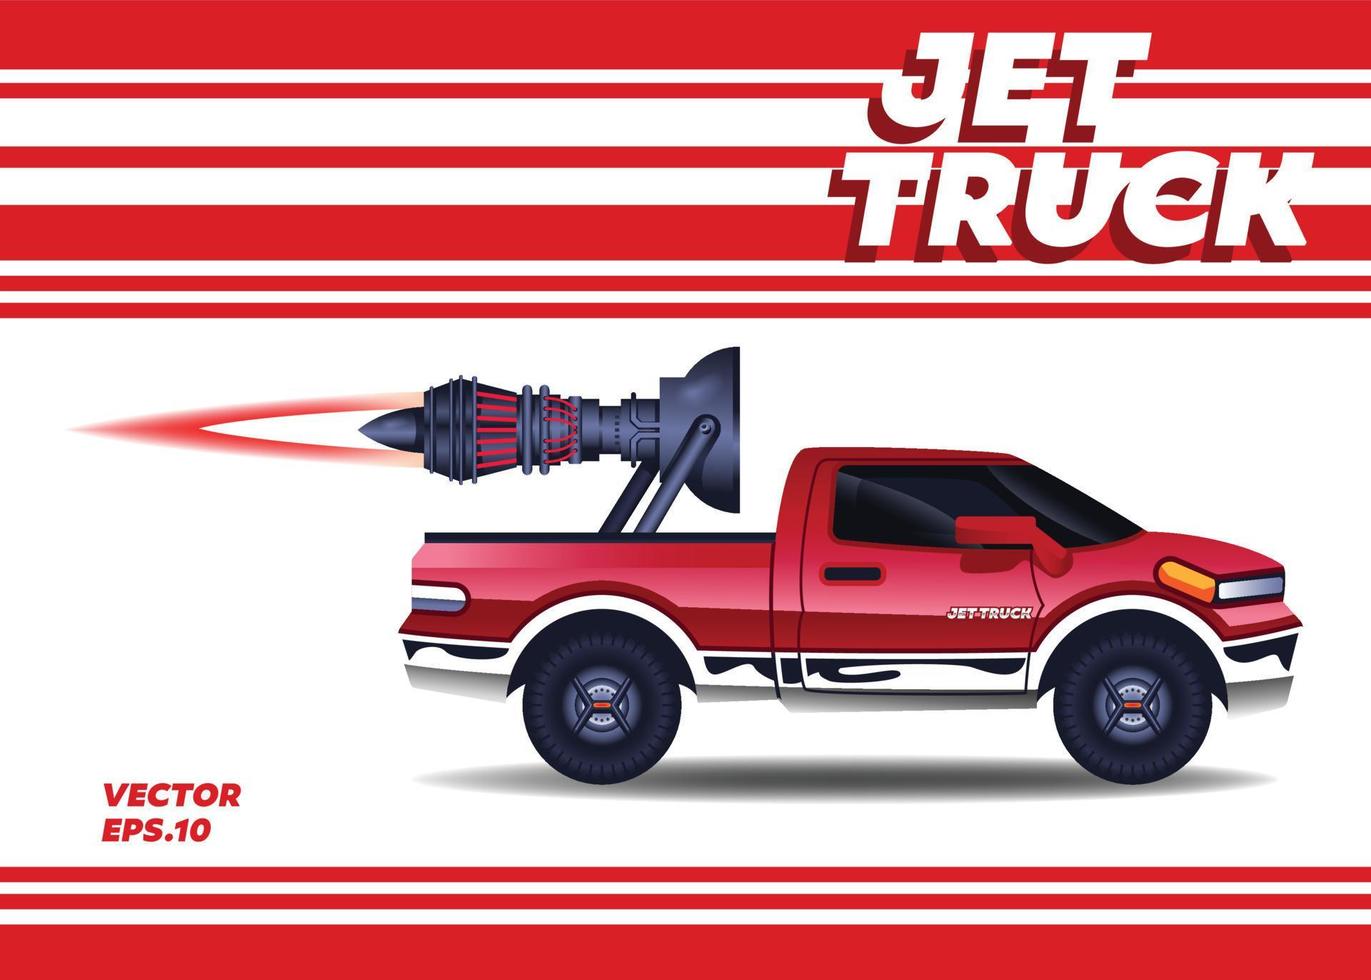 Jet Truck Engine vector